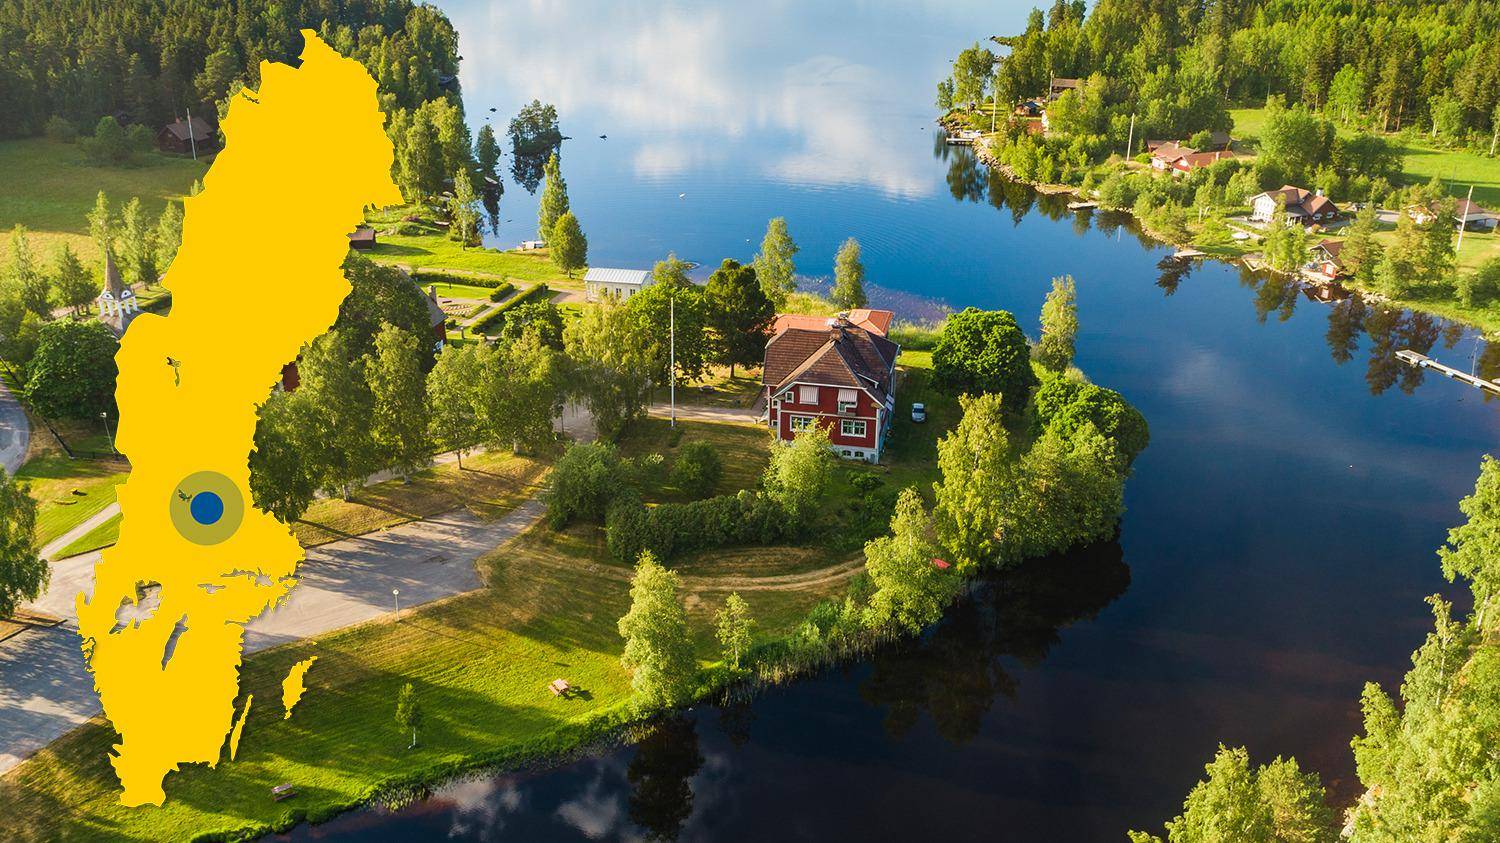 Une rivière se jette dans un lac. Il y a quelques maisons entourées de nature à côté du lac. Il y a une carte jaune de la Suède avec un point bleu qui indique l'emplacement de Toftan..